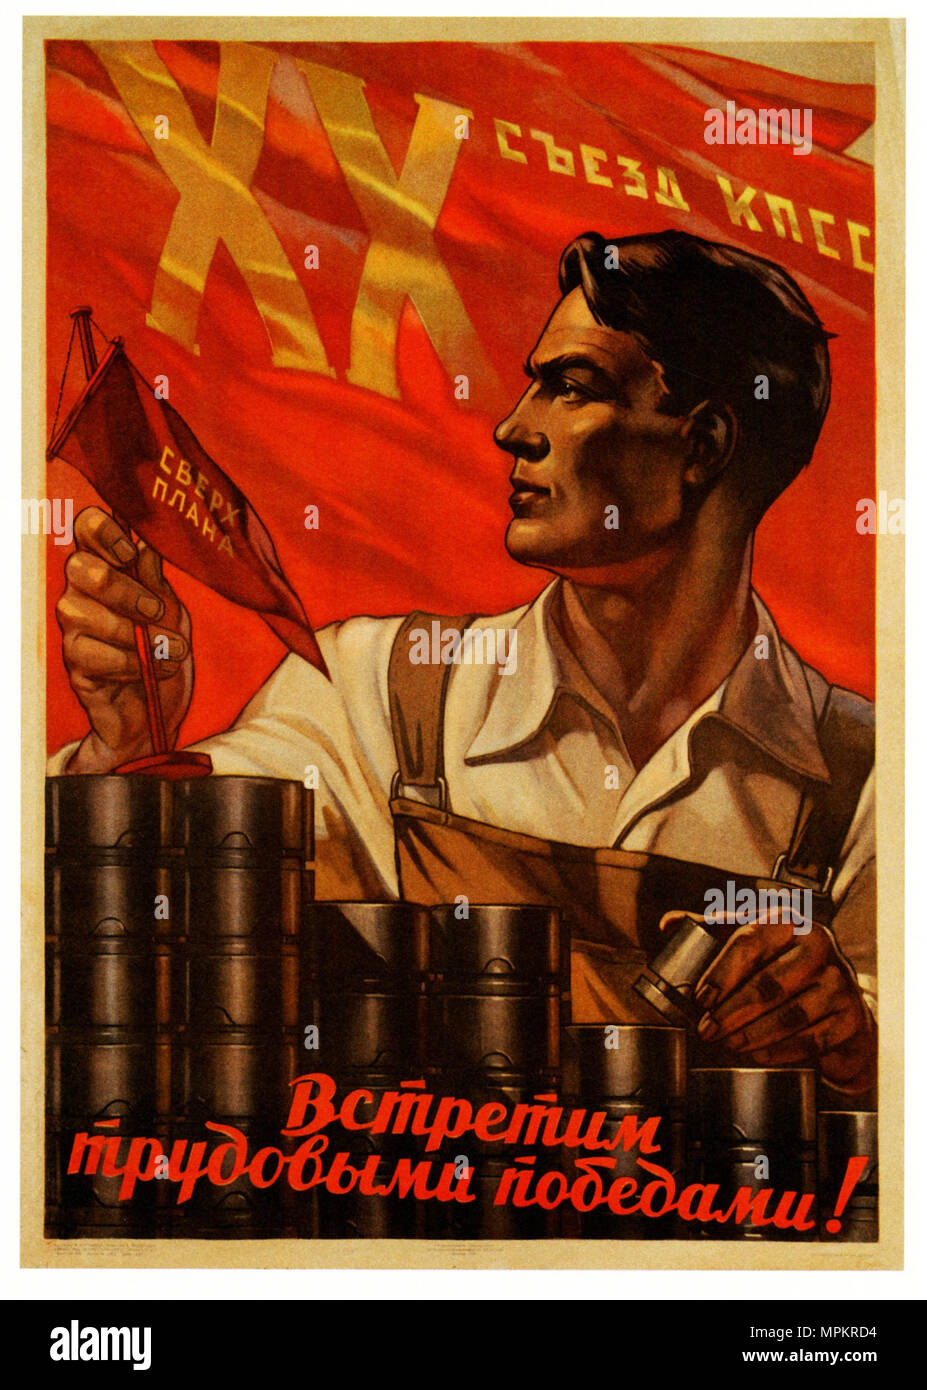 Udssr Vintage Propaganda Poster - wir Arbeit Siege für den 20. Kongress der Kommunistischen Partei der UDSSR zu liefern! Stockfoto